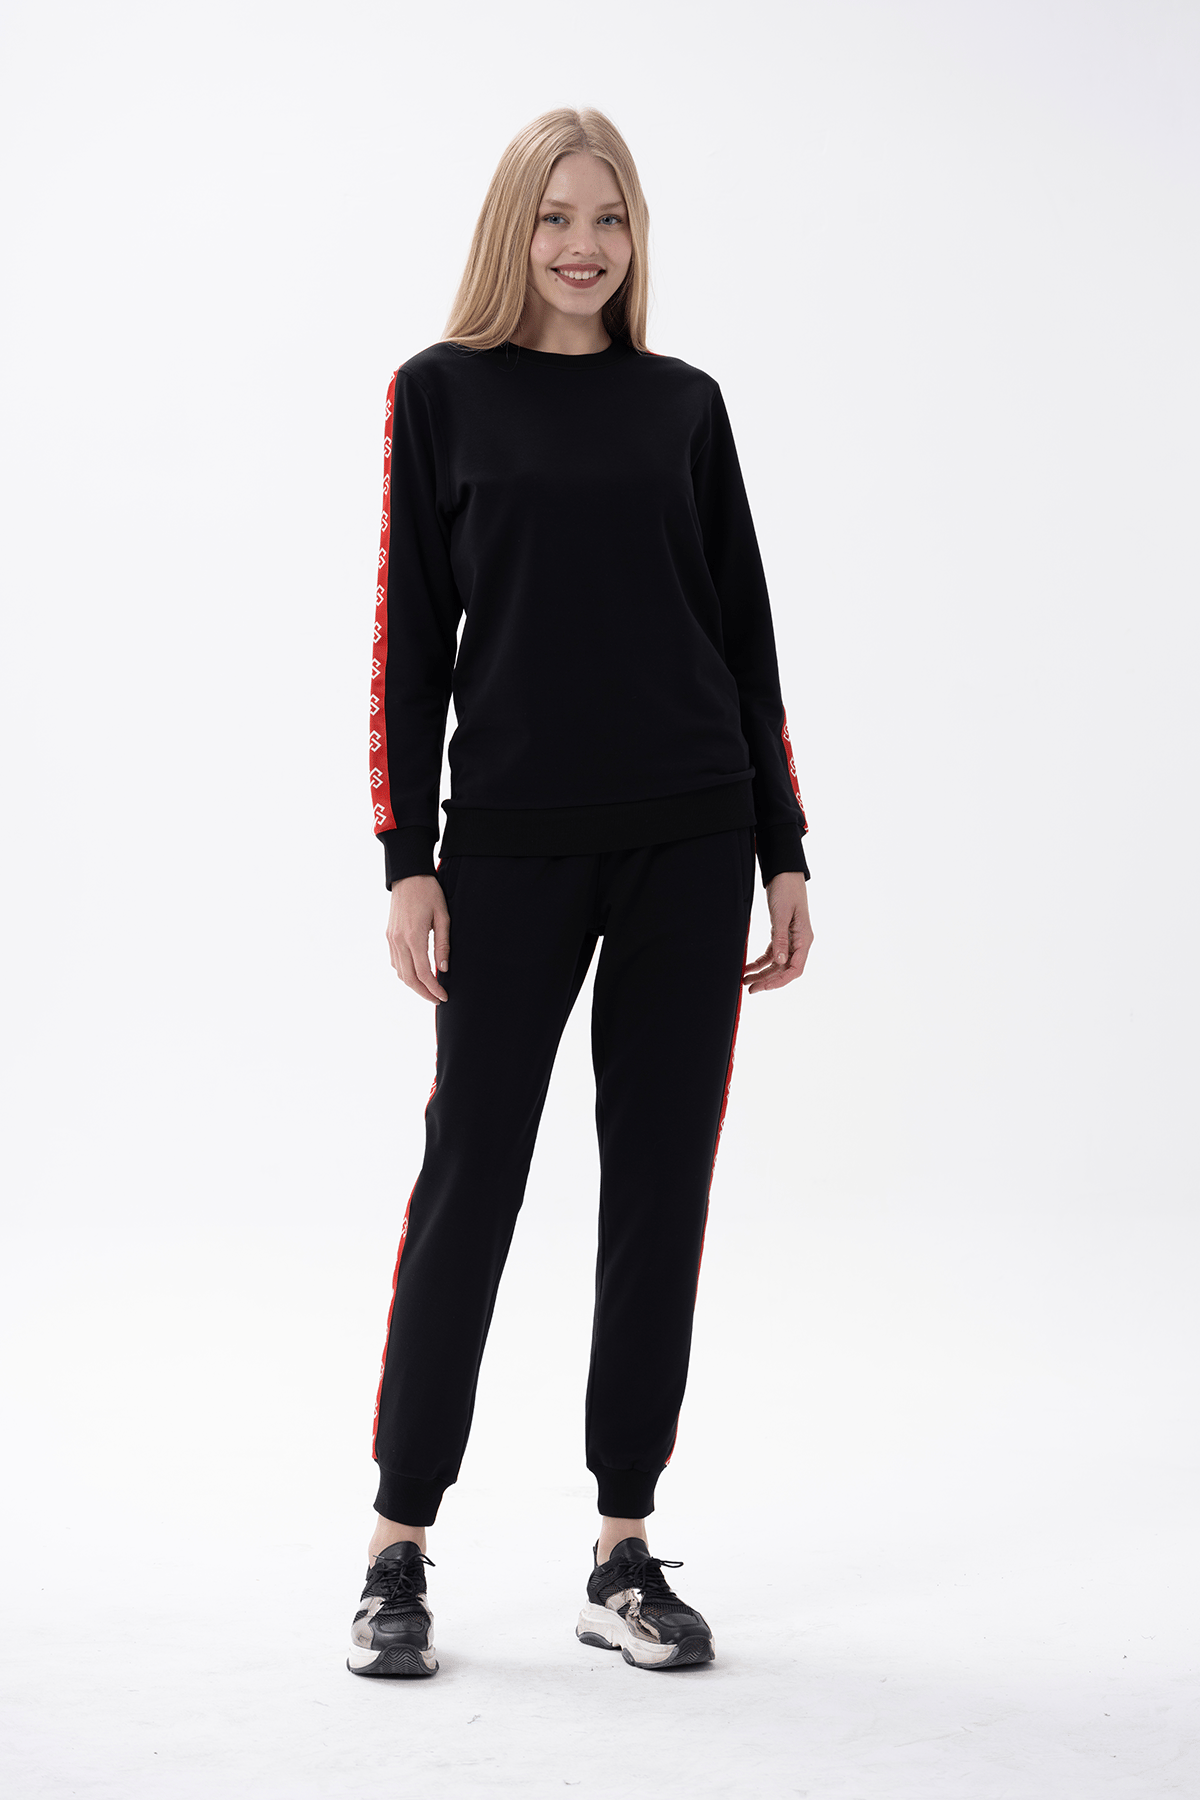 Kadın Kırmızı Şeritli Siyah Eşofman Takımı 10175 | Jiber İç Giyim